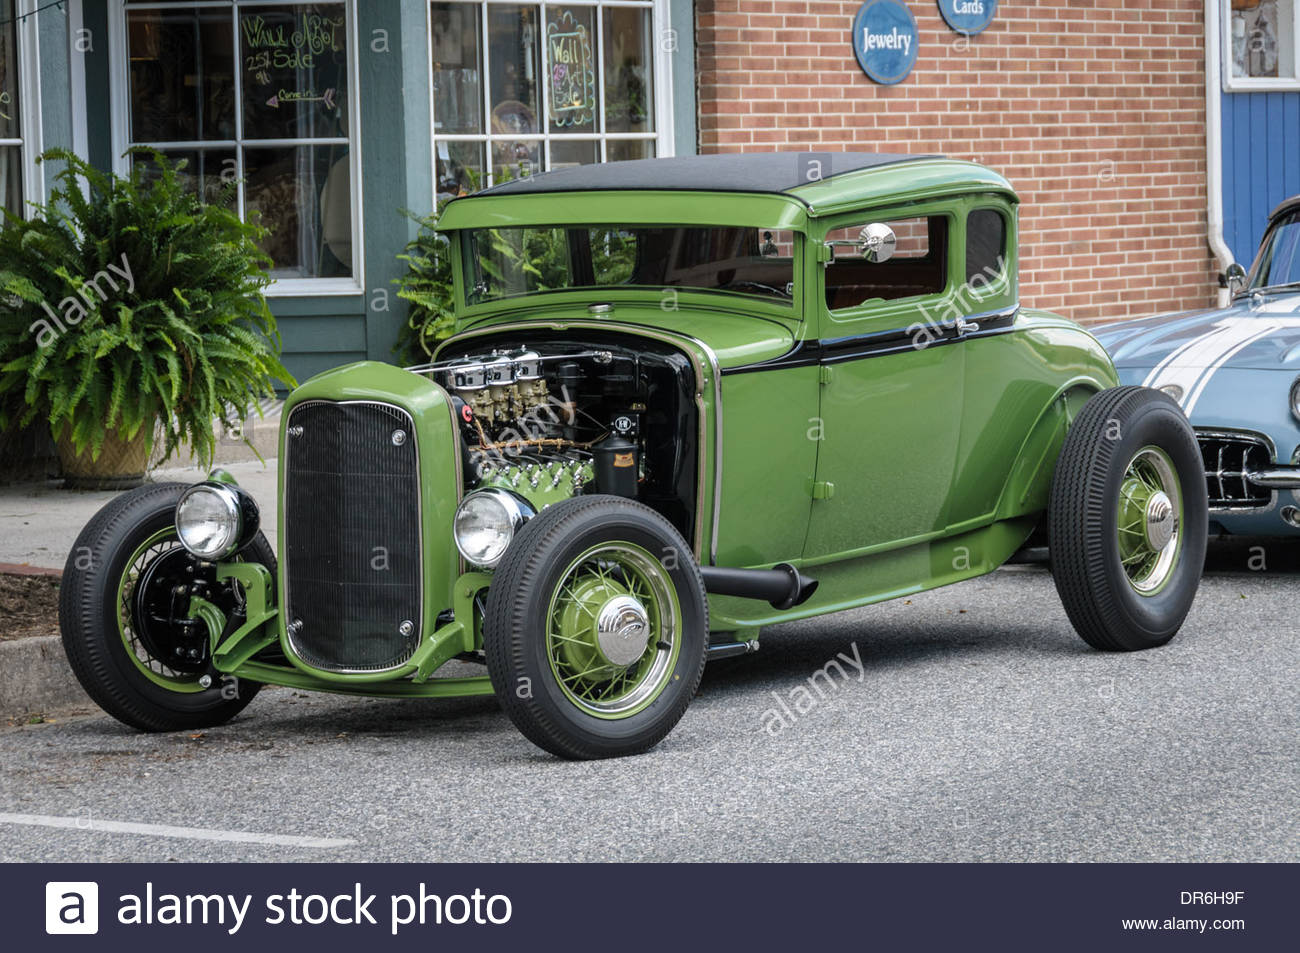 1930-model-a-ford-hot-rod-havre-de-grace-maryland-DR6H9F.jpg